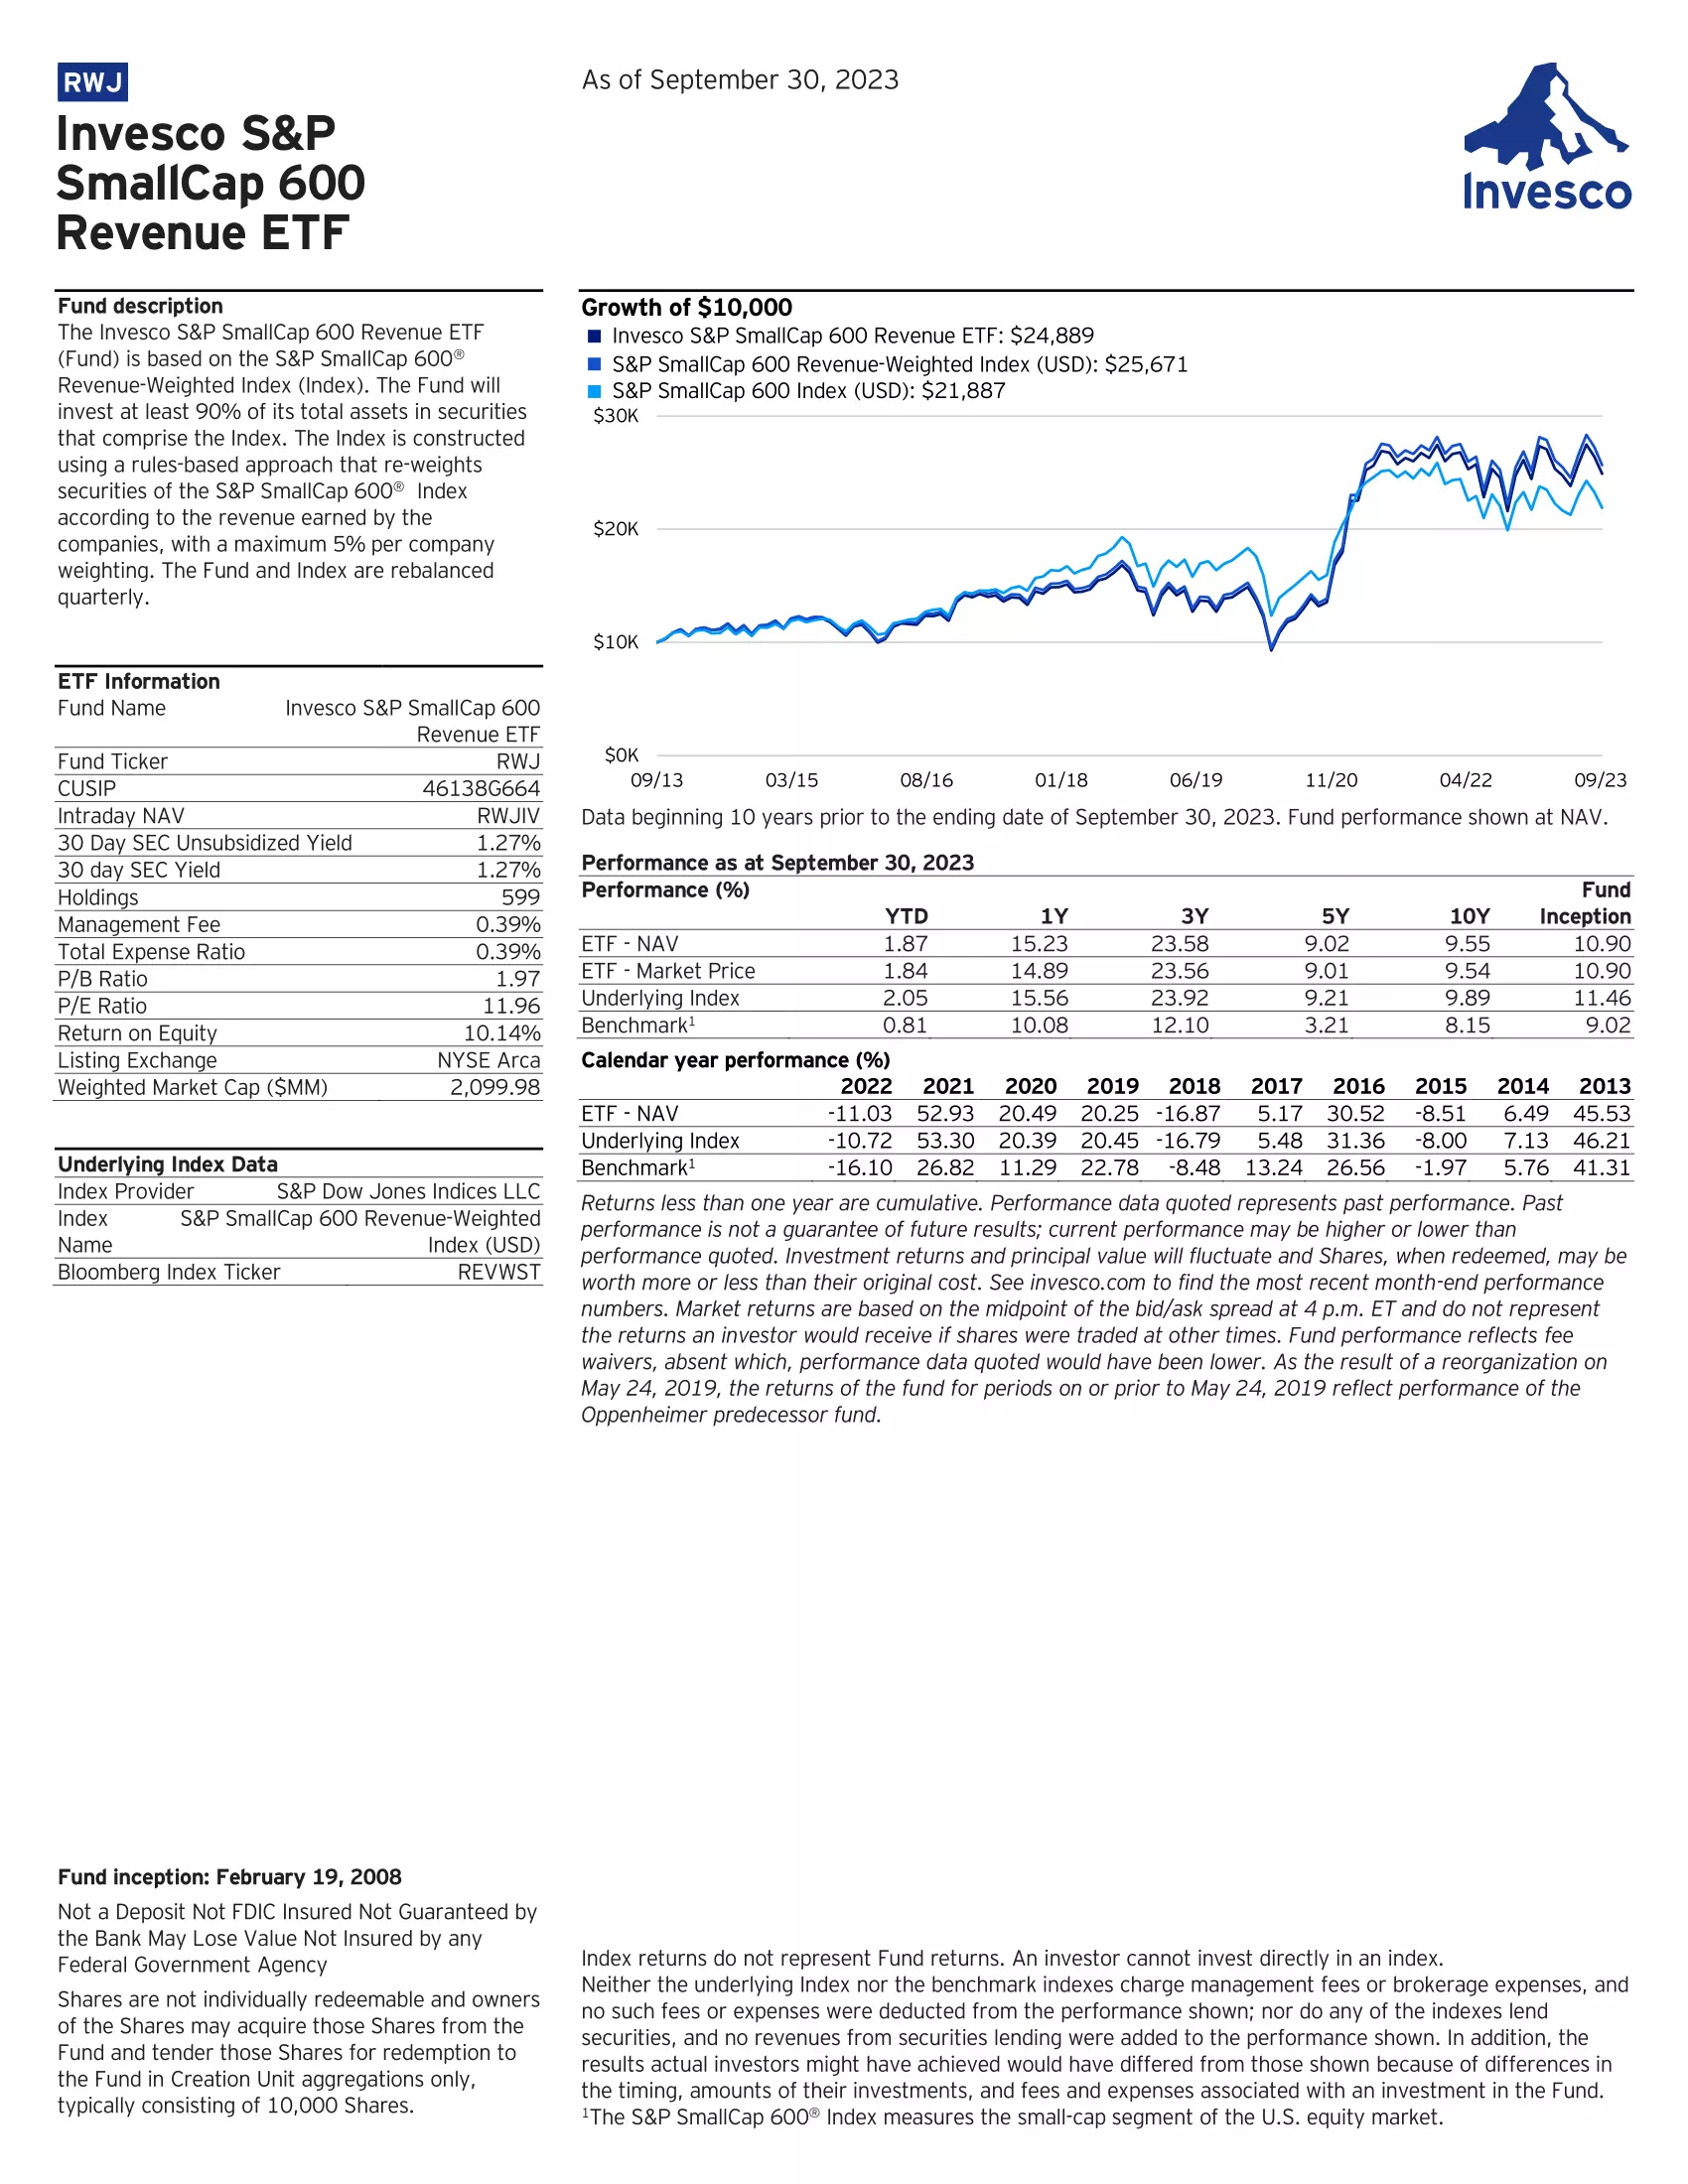 RWJ: Invesco S&P SmallCap 600 Revenue ETF